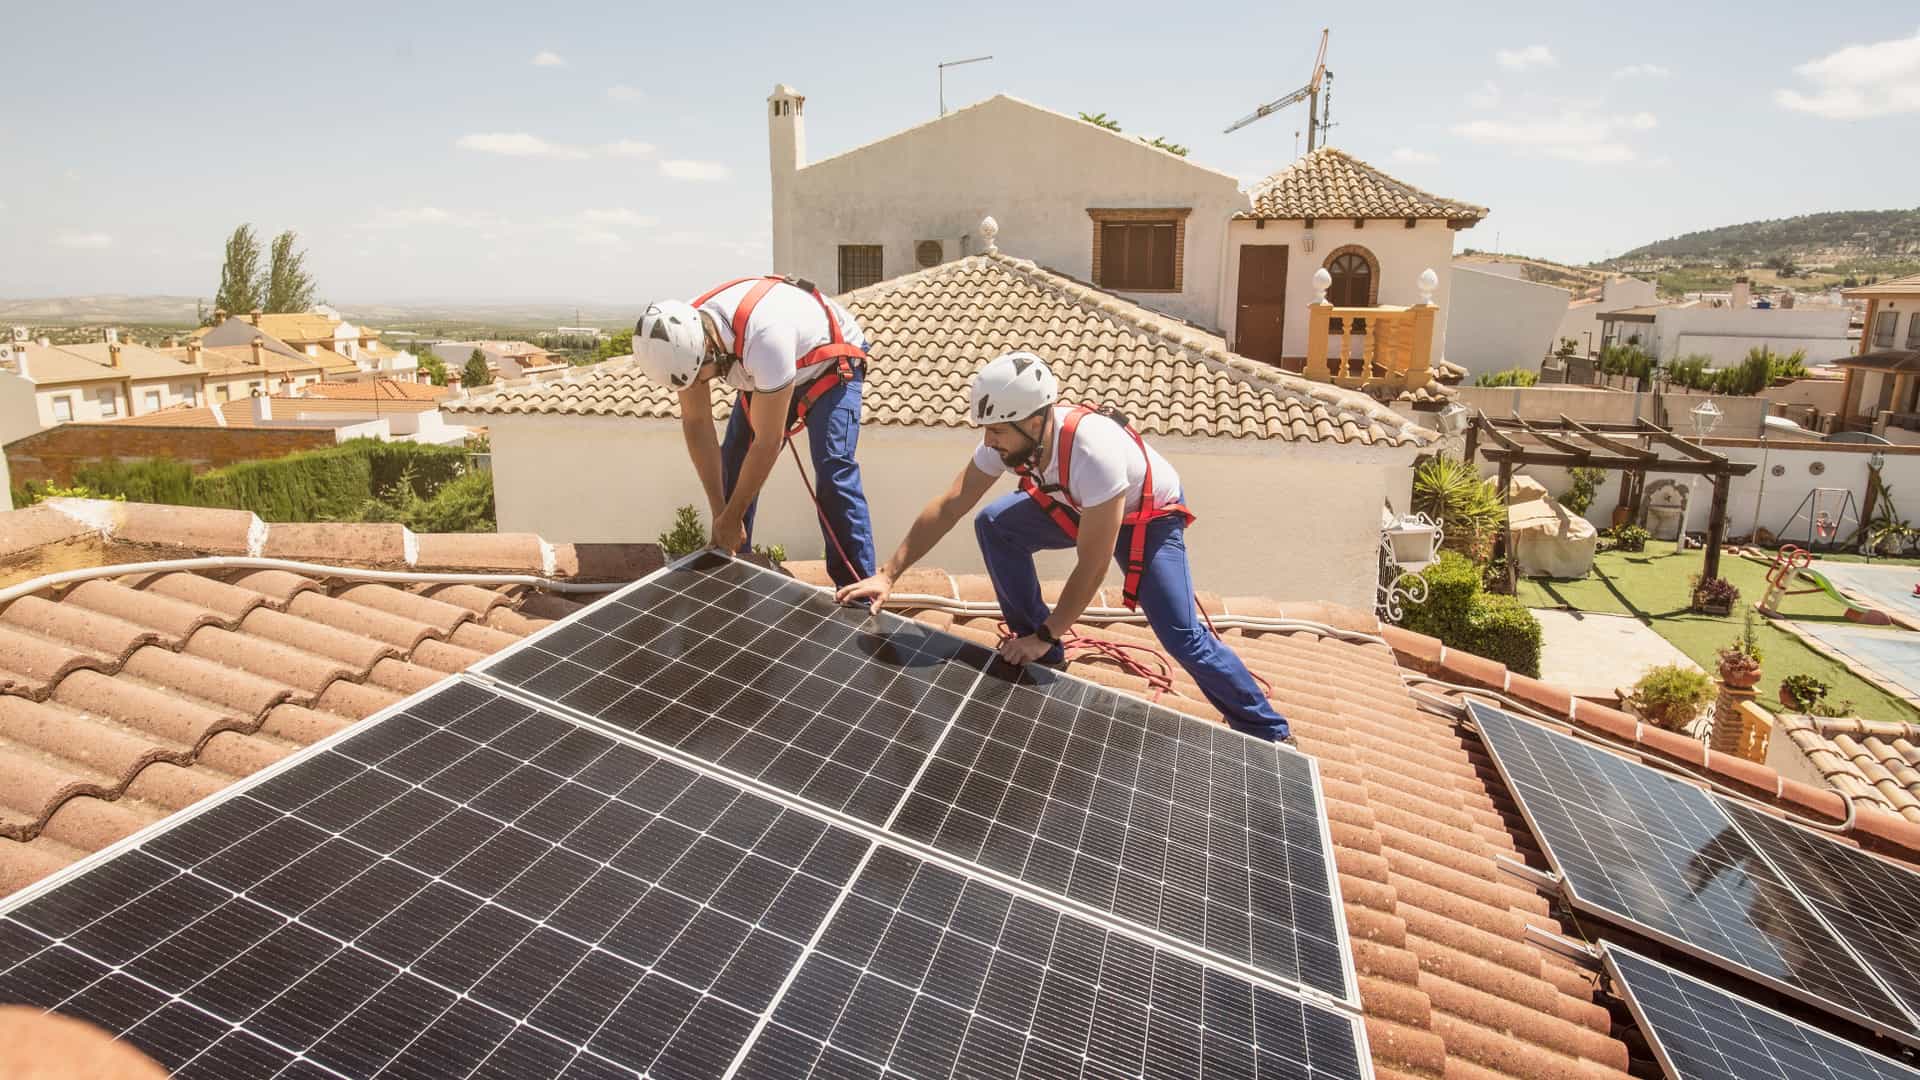 Técnicos instalando paneles solares en el tejado de una casa tras escoger los soportes idóneos para ese tejado